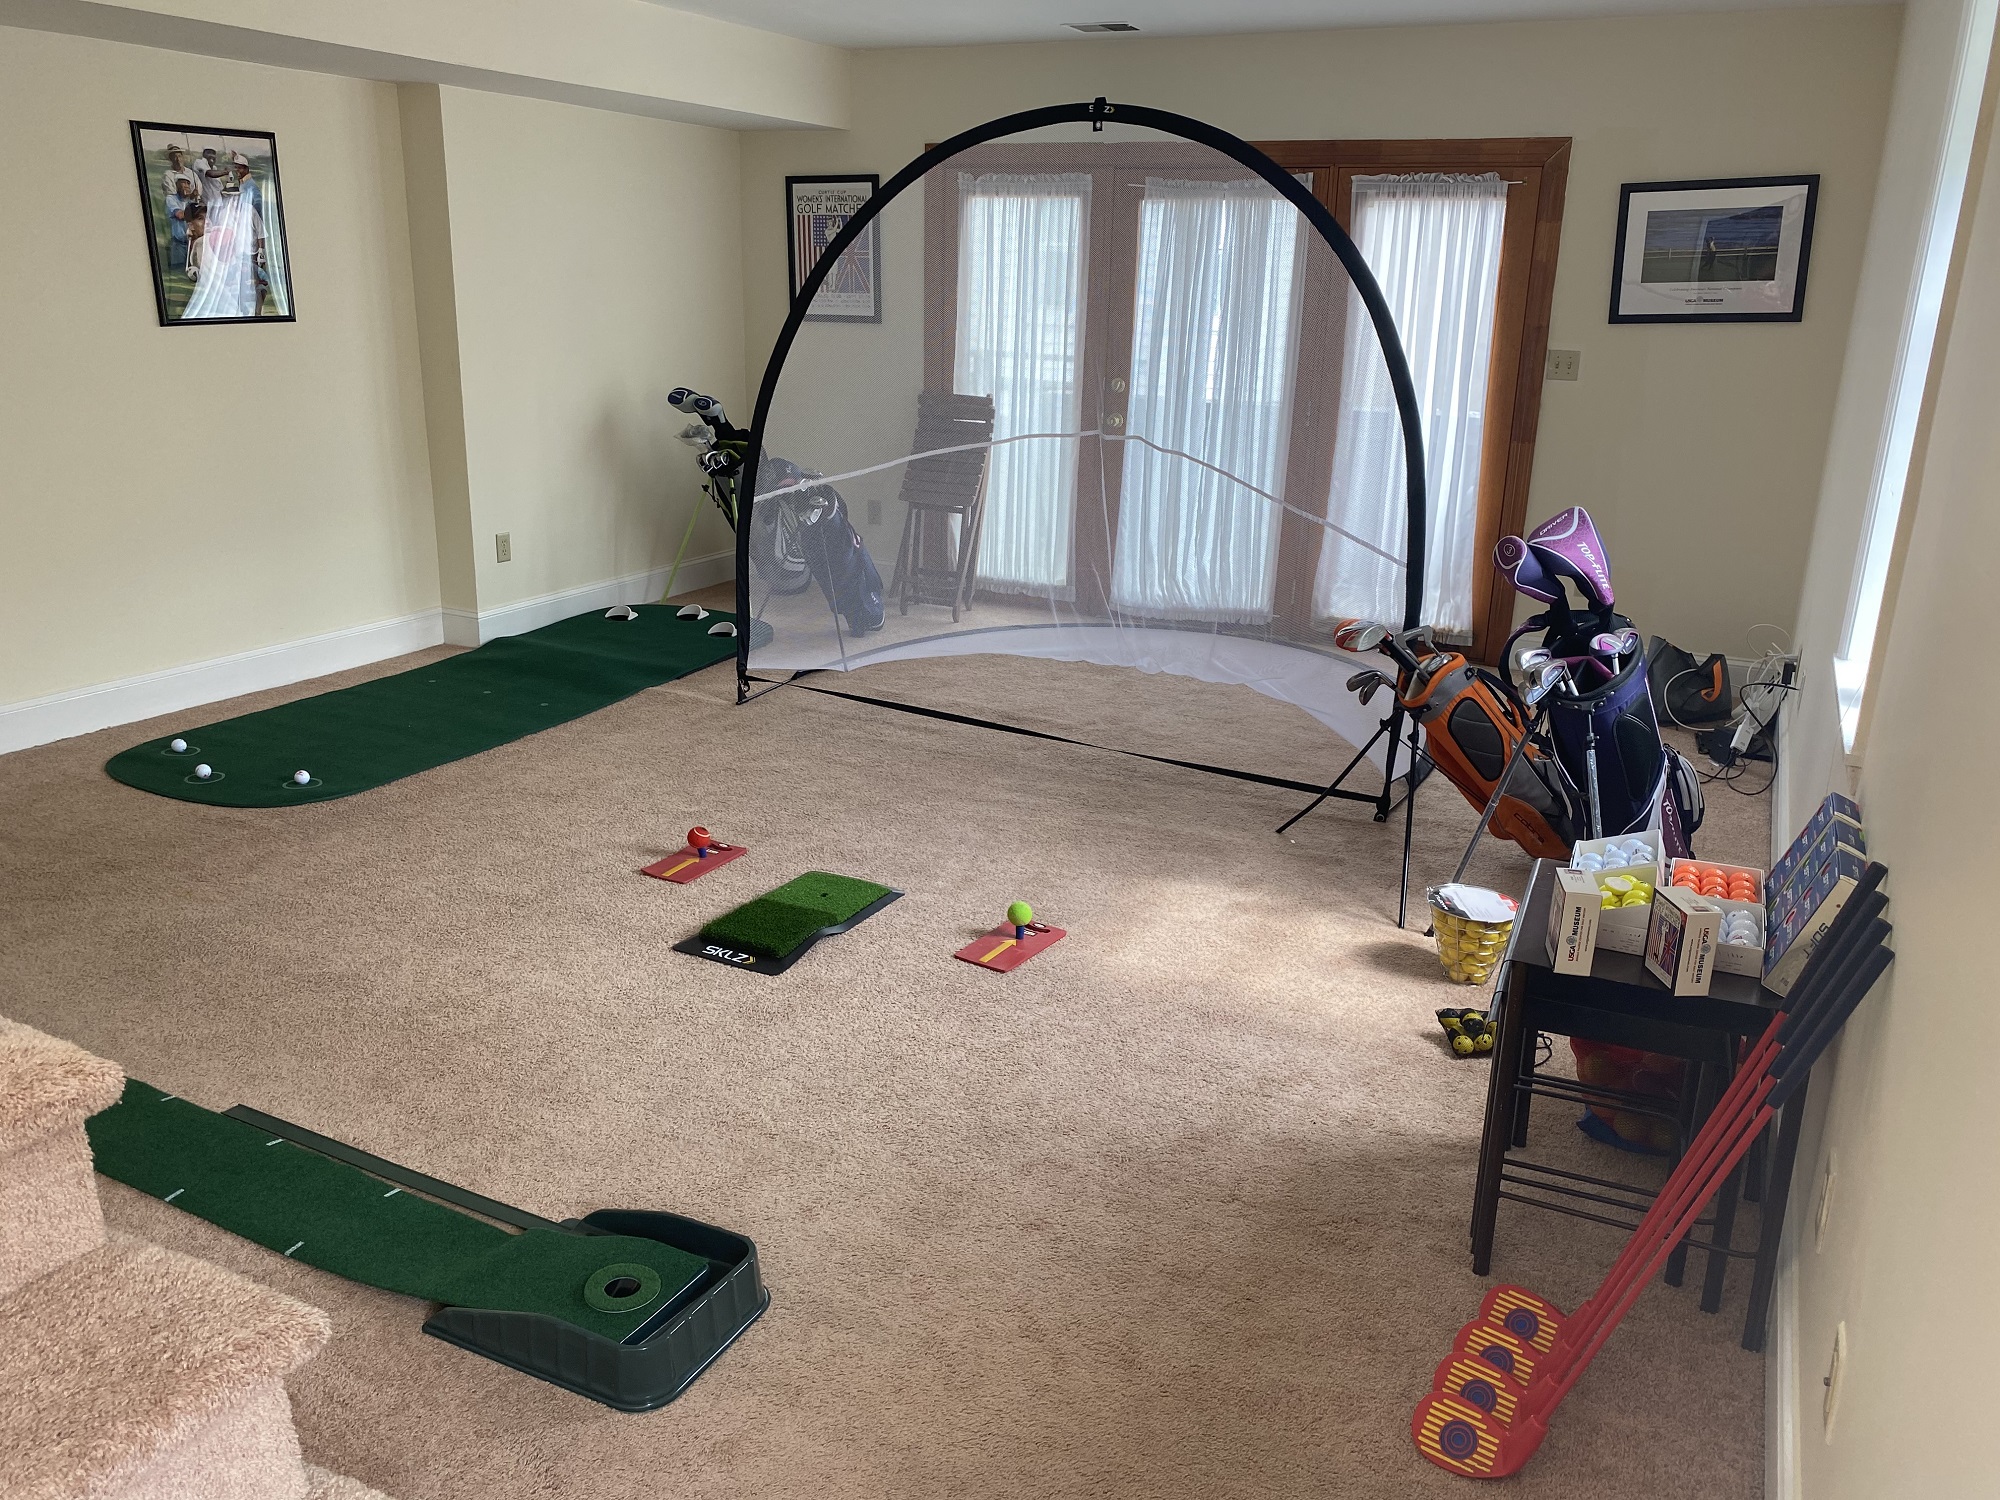 Golf setup